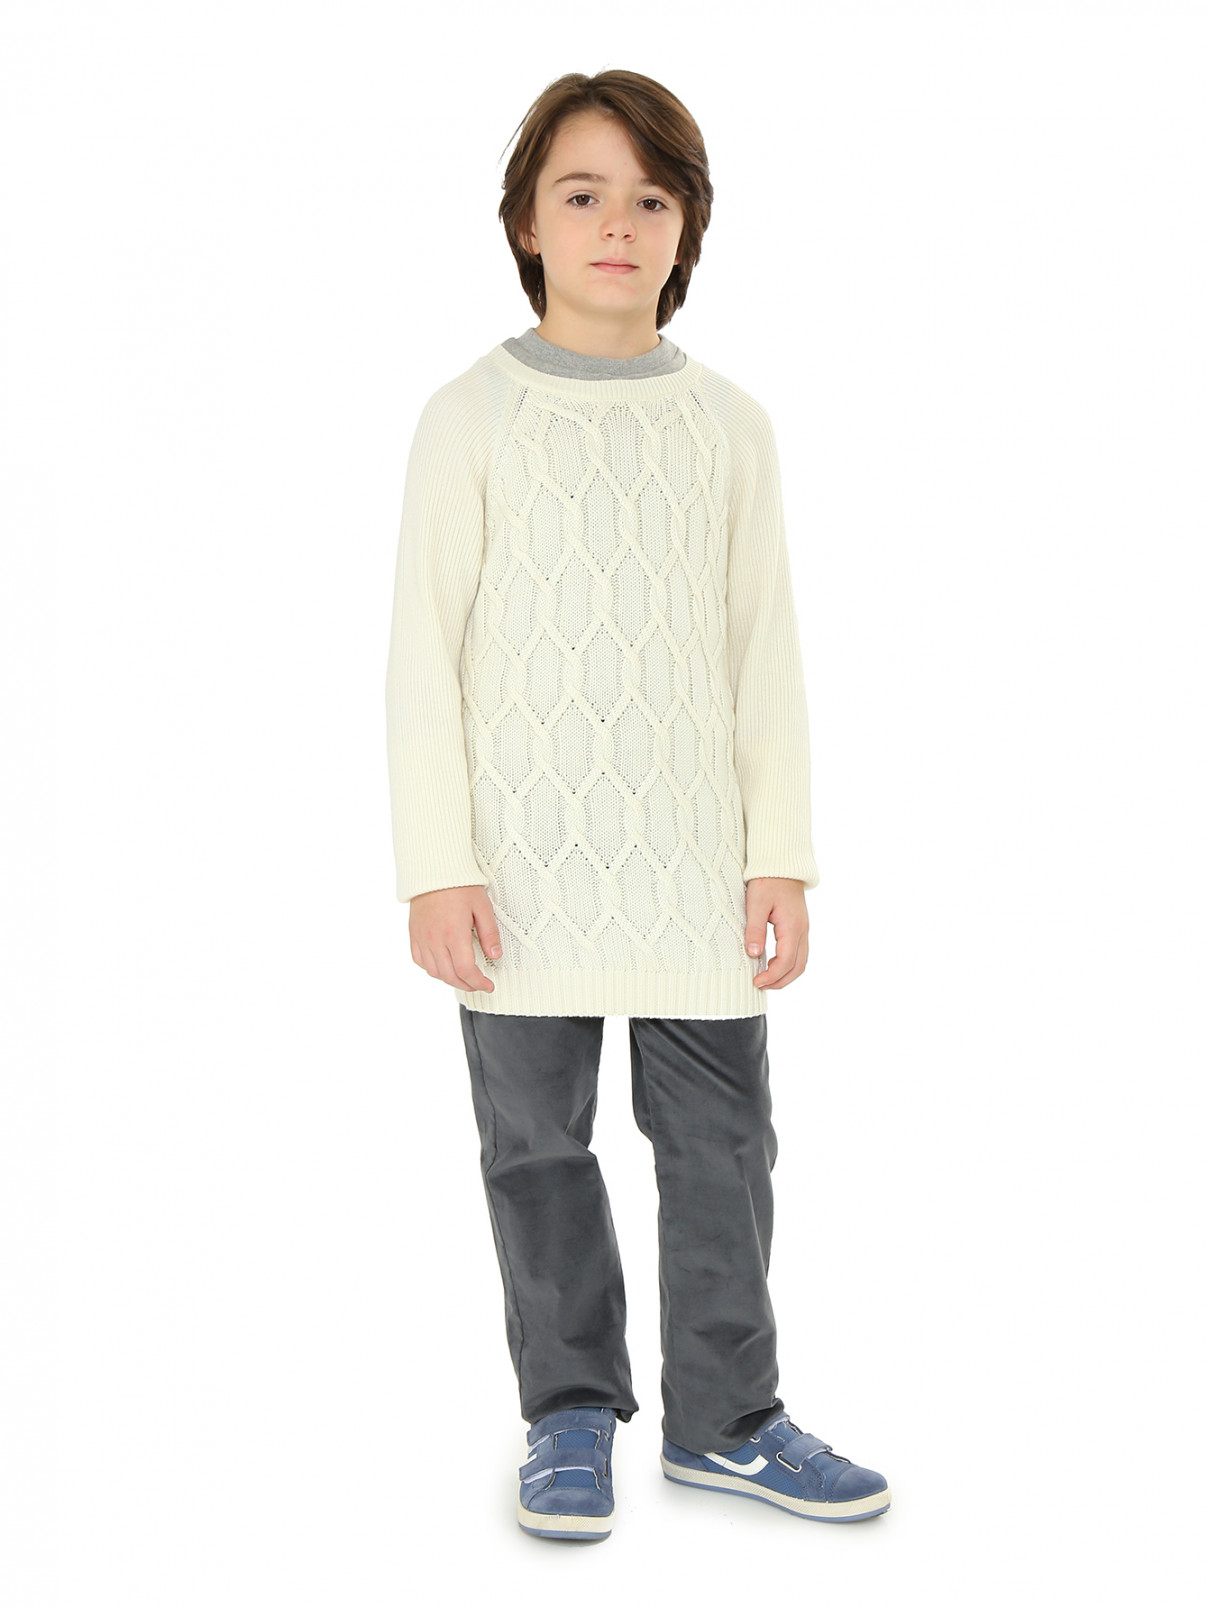 Джемпер фактурной вязки с контрастным воротом MiMiSol  –  Модель Общий вид  – Цвет:  Белый